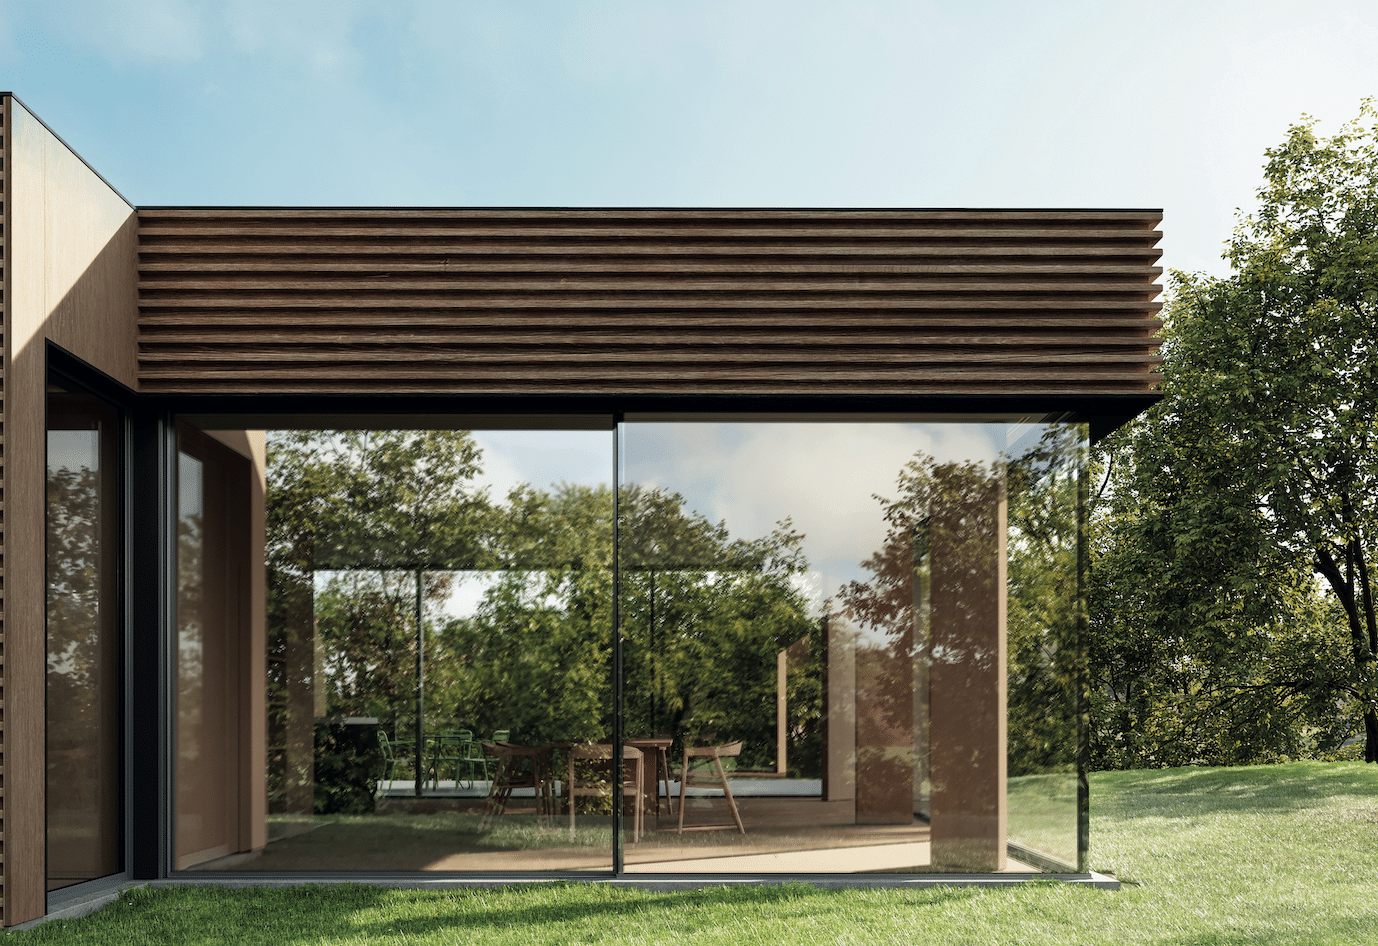 Solarlux zeigt ein modernes Holzhaus mit Flachdach und rundum verglastem Wintergarten für viel natürlichen Lichteinfall und Sicht auf den gepflegten Garten.